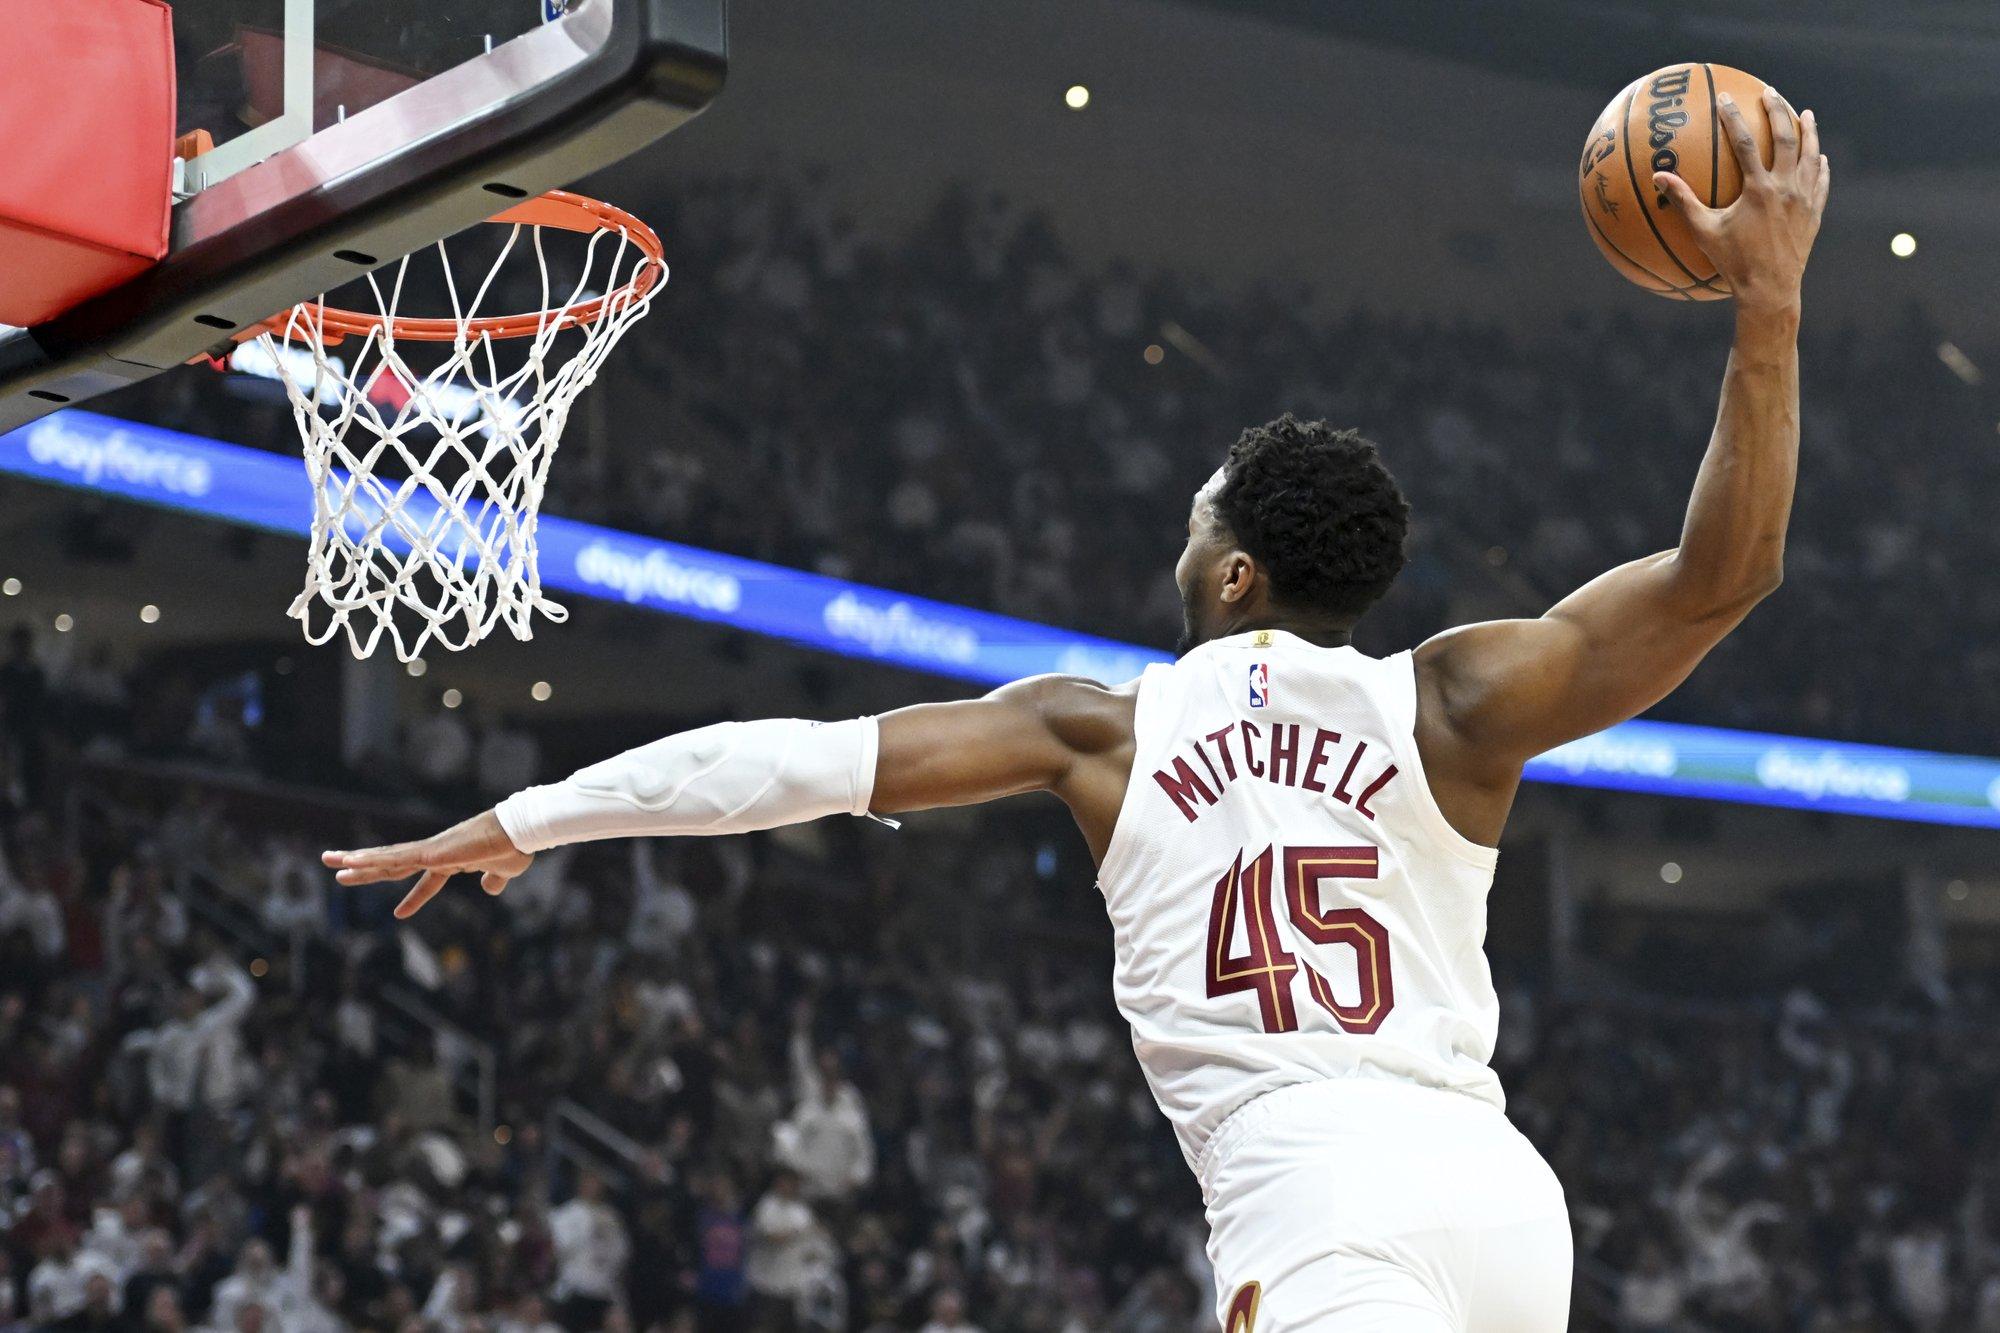 Po krepšiais karaliavusi „Cavaliers“ užtikrintai pradėjo NBA atkrintamąsias varžybas